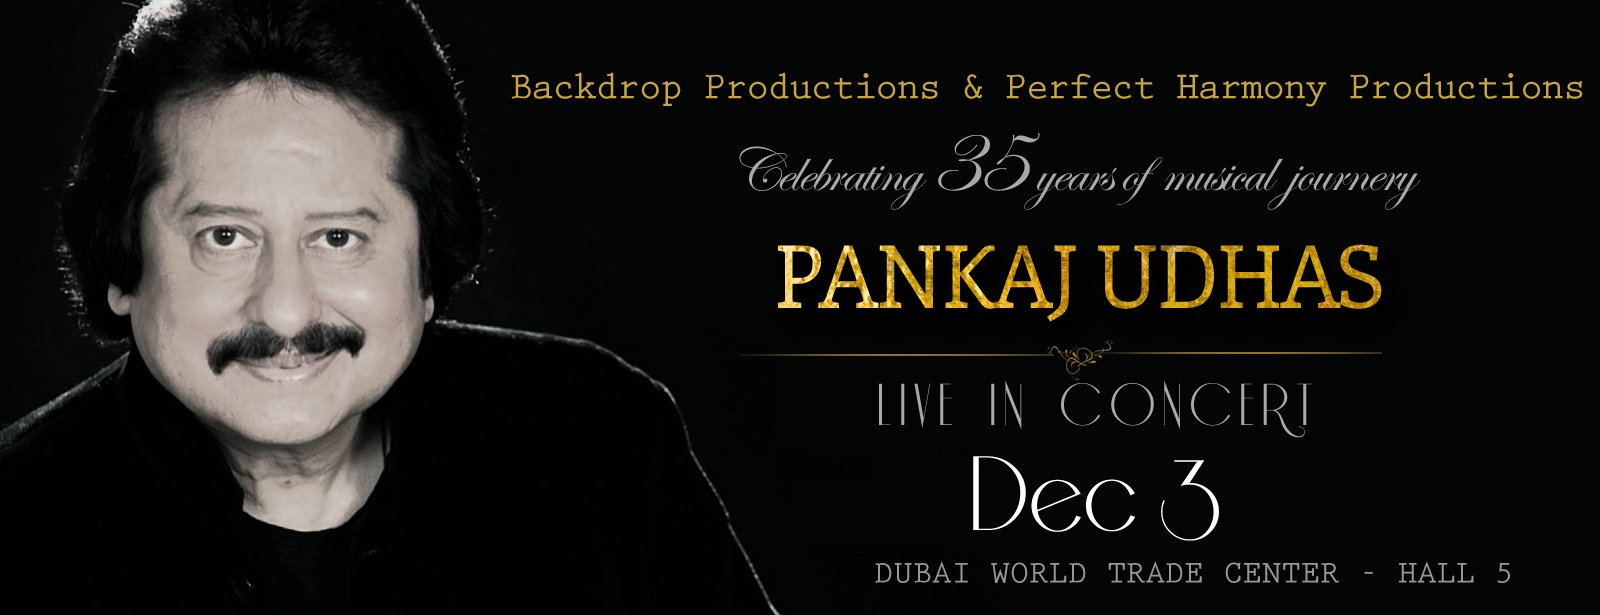 Pankaj Udhas Live in Concert